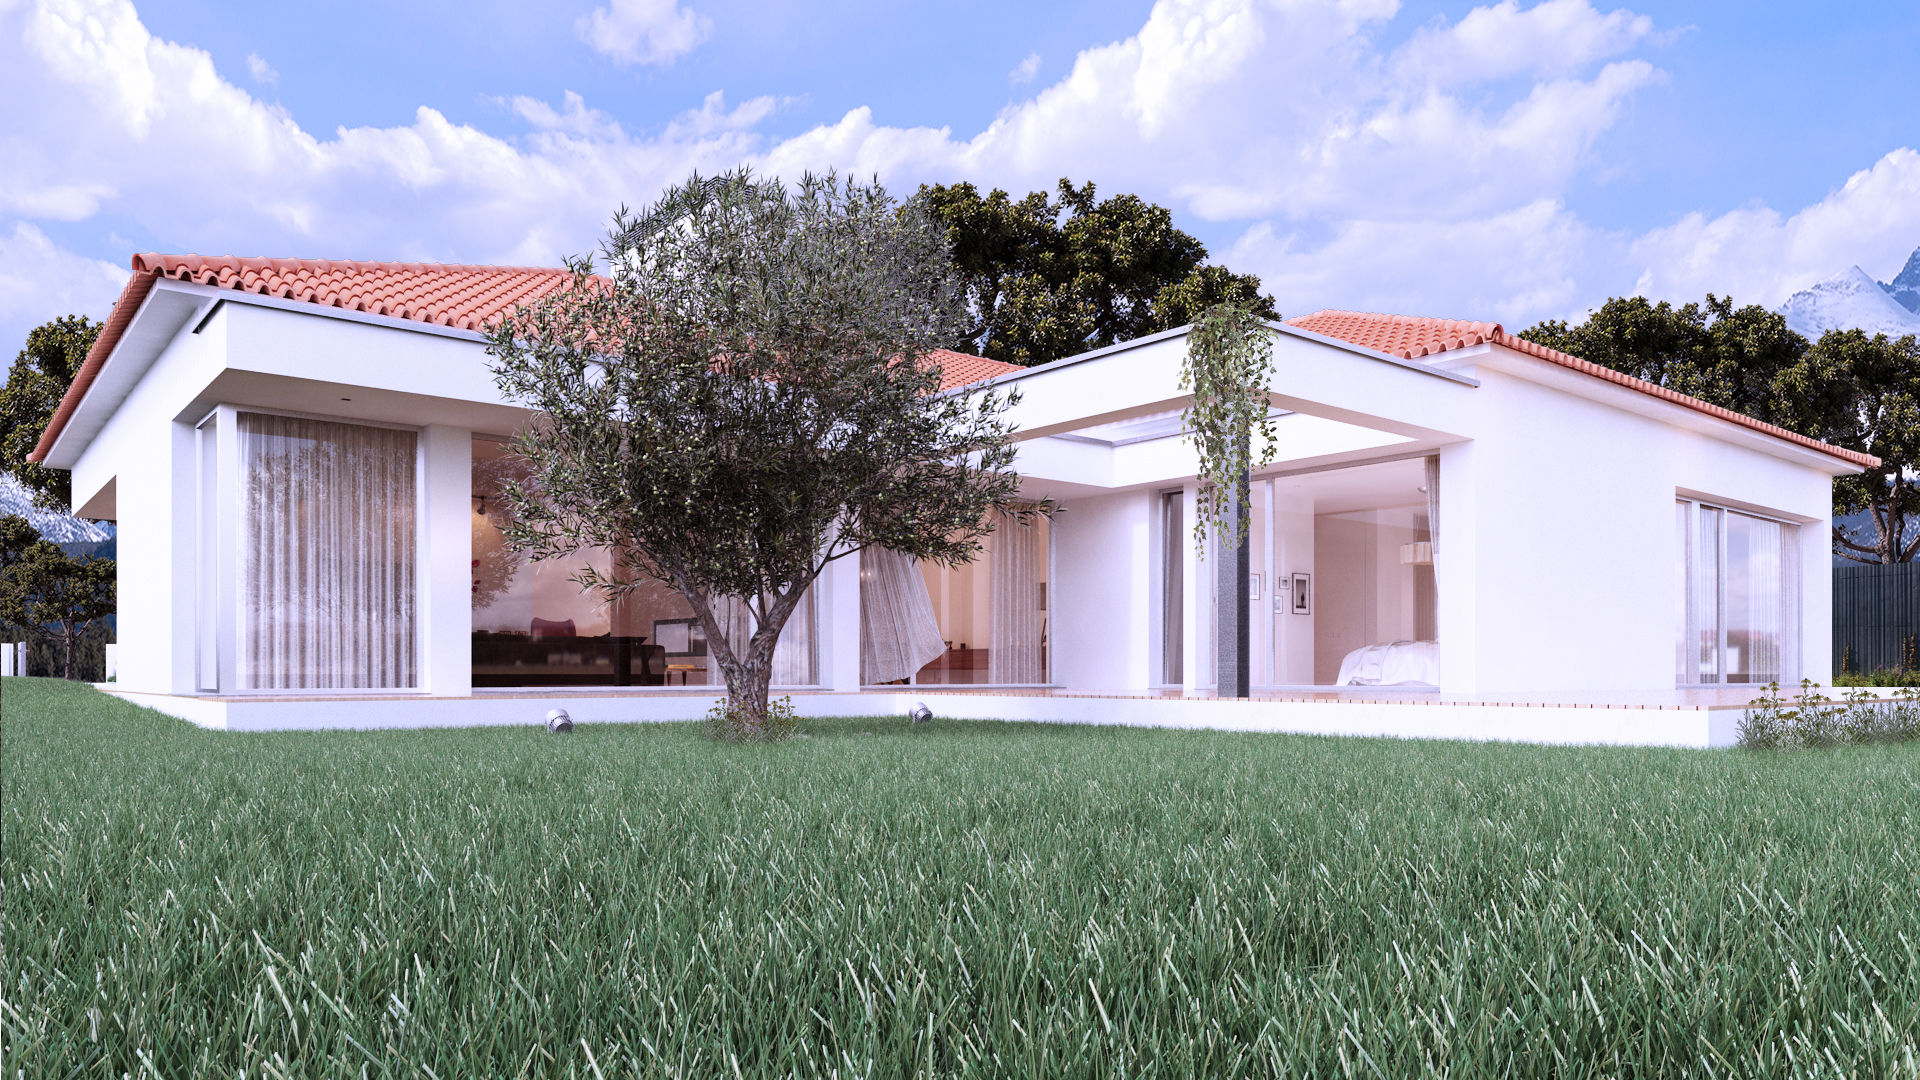 AA House, Rúben Ferreira | Arquitecto Rúben Ferreira | Arquitecto Casas de estilo moderno